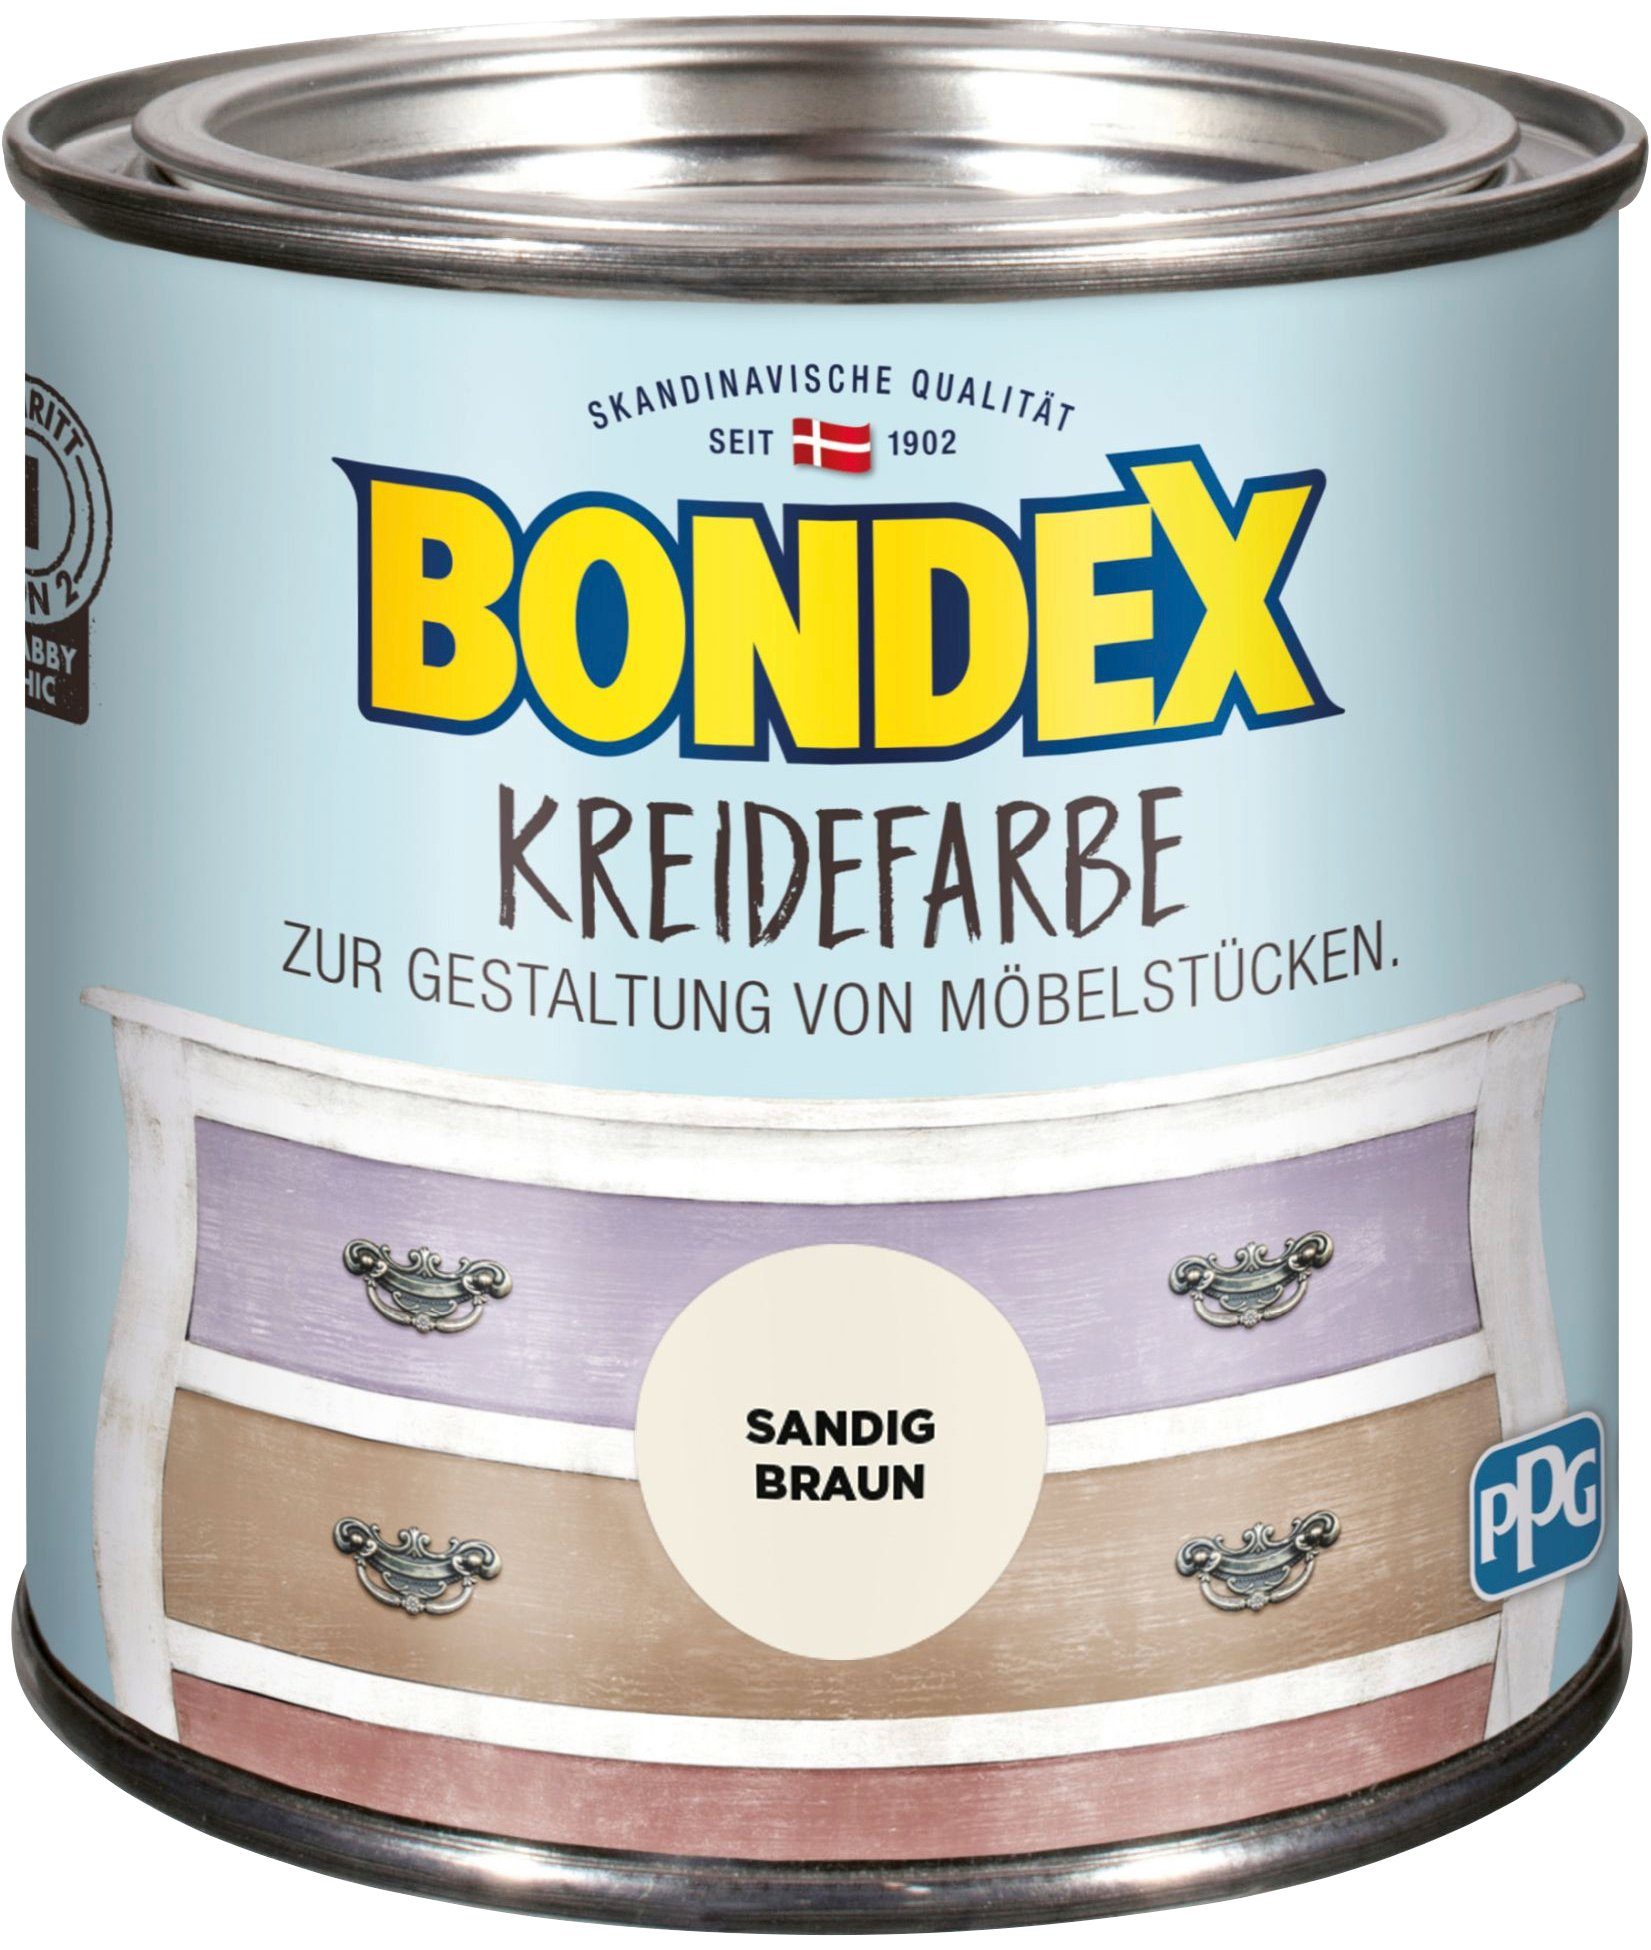 l 0,5 Kreidefarbe Bondex Sandig zur Möbelstücken, Gestaltung KREIDEFARBE, Braun von